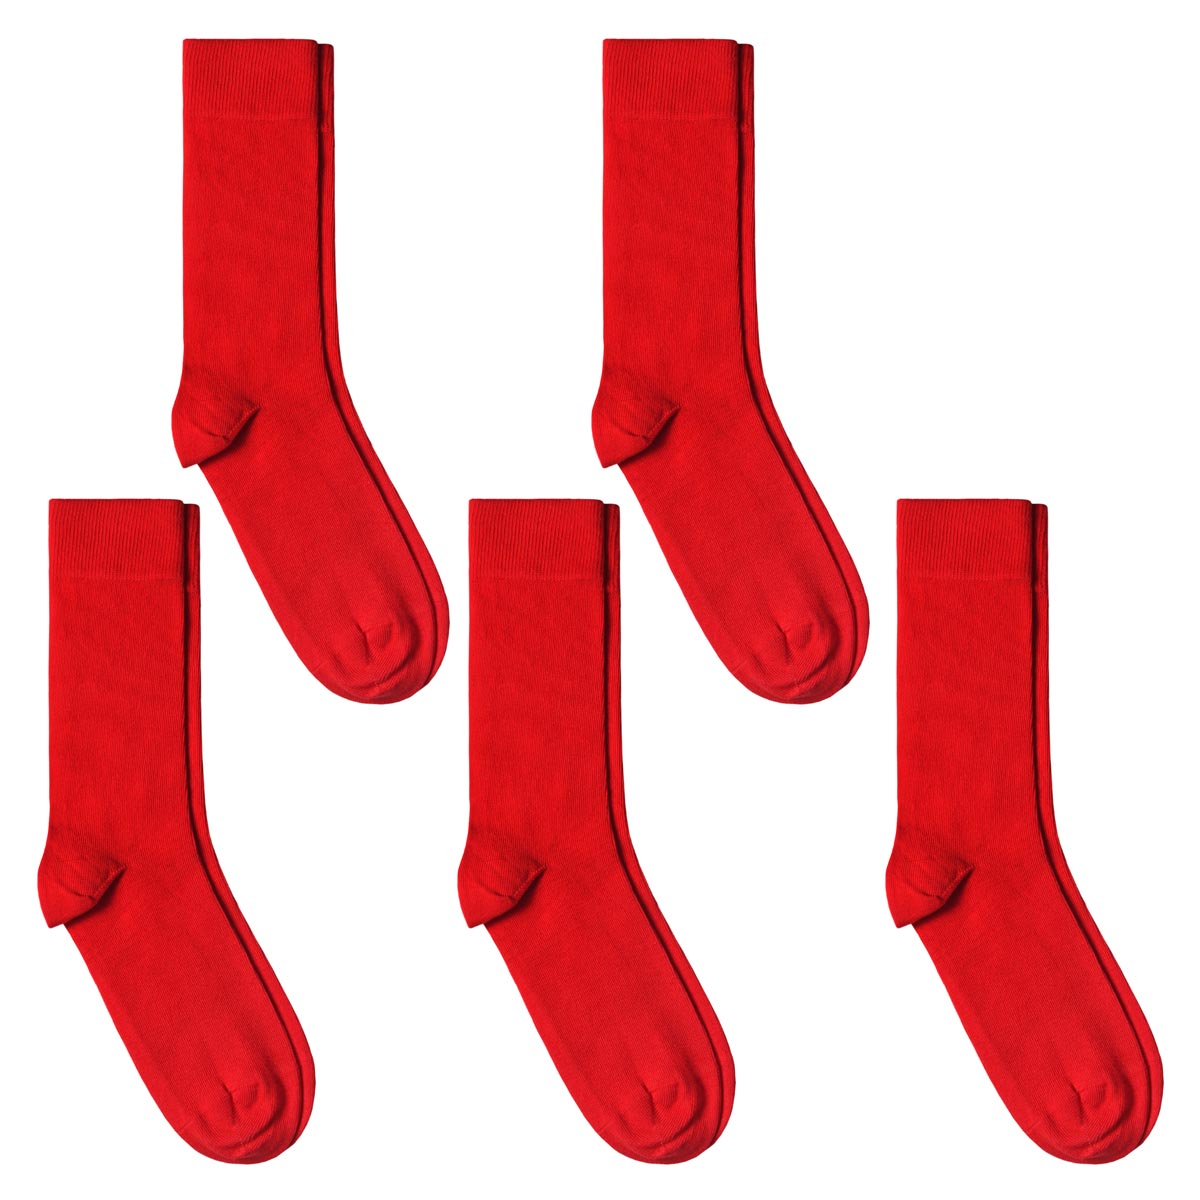 CH-00590_A12-1--_Lot-5-paires-de-chaussettes-homme-rouges-unies